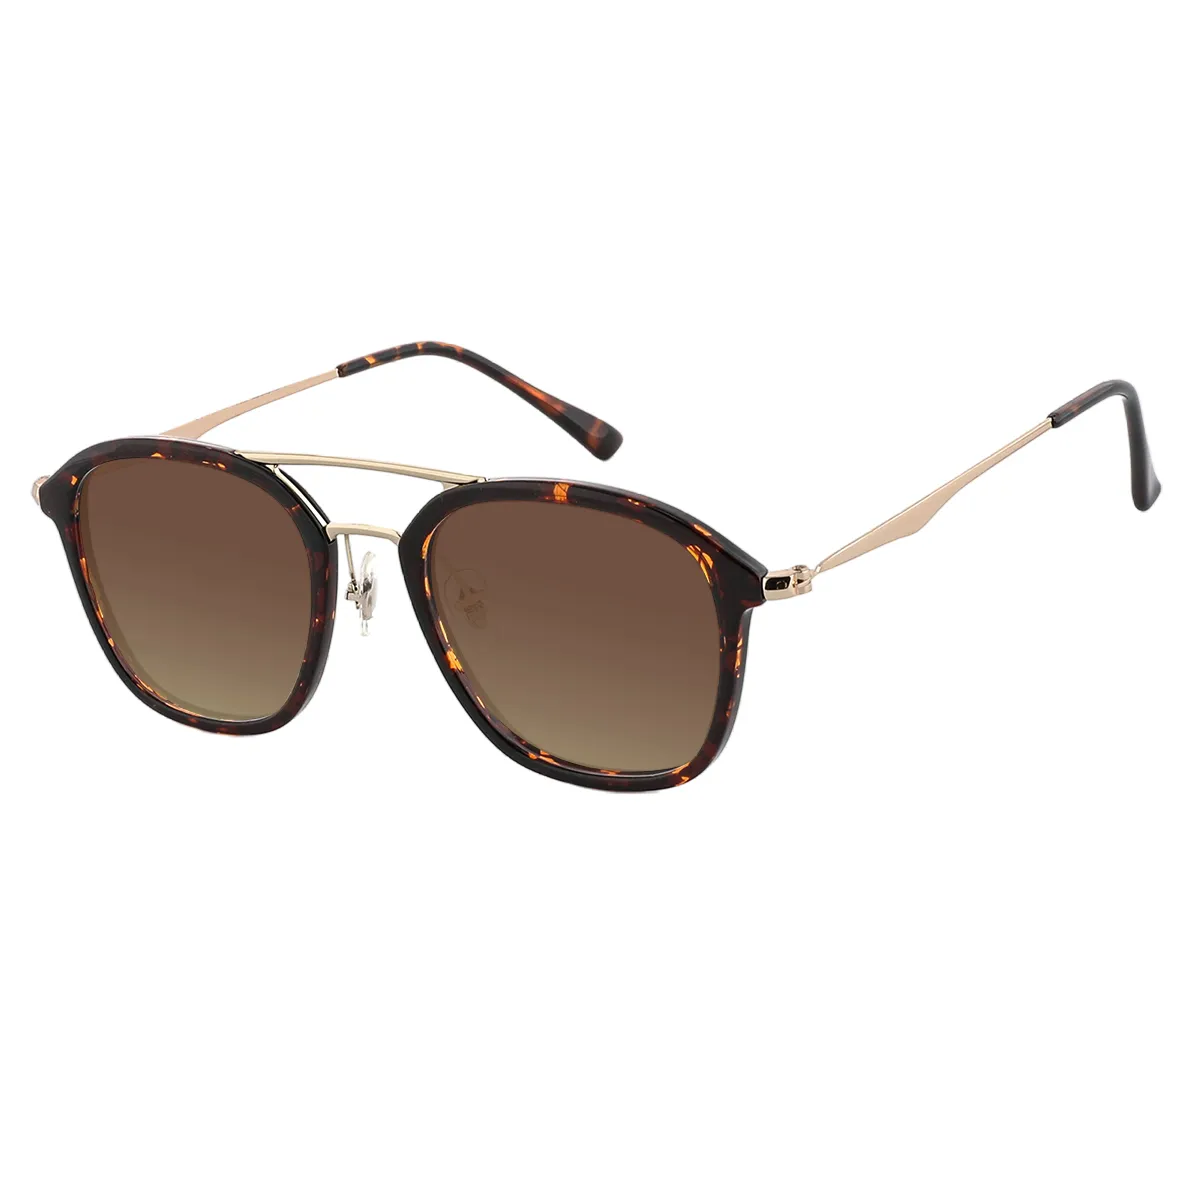 Yeager - Aviator Demi Sunglasses for Men & Women